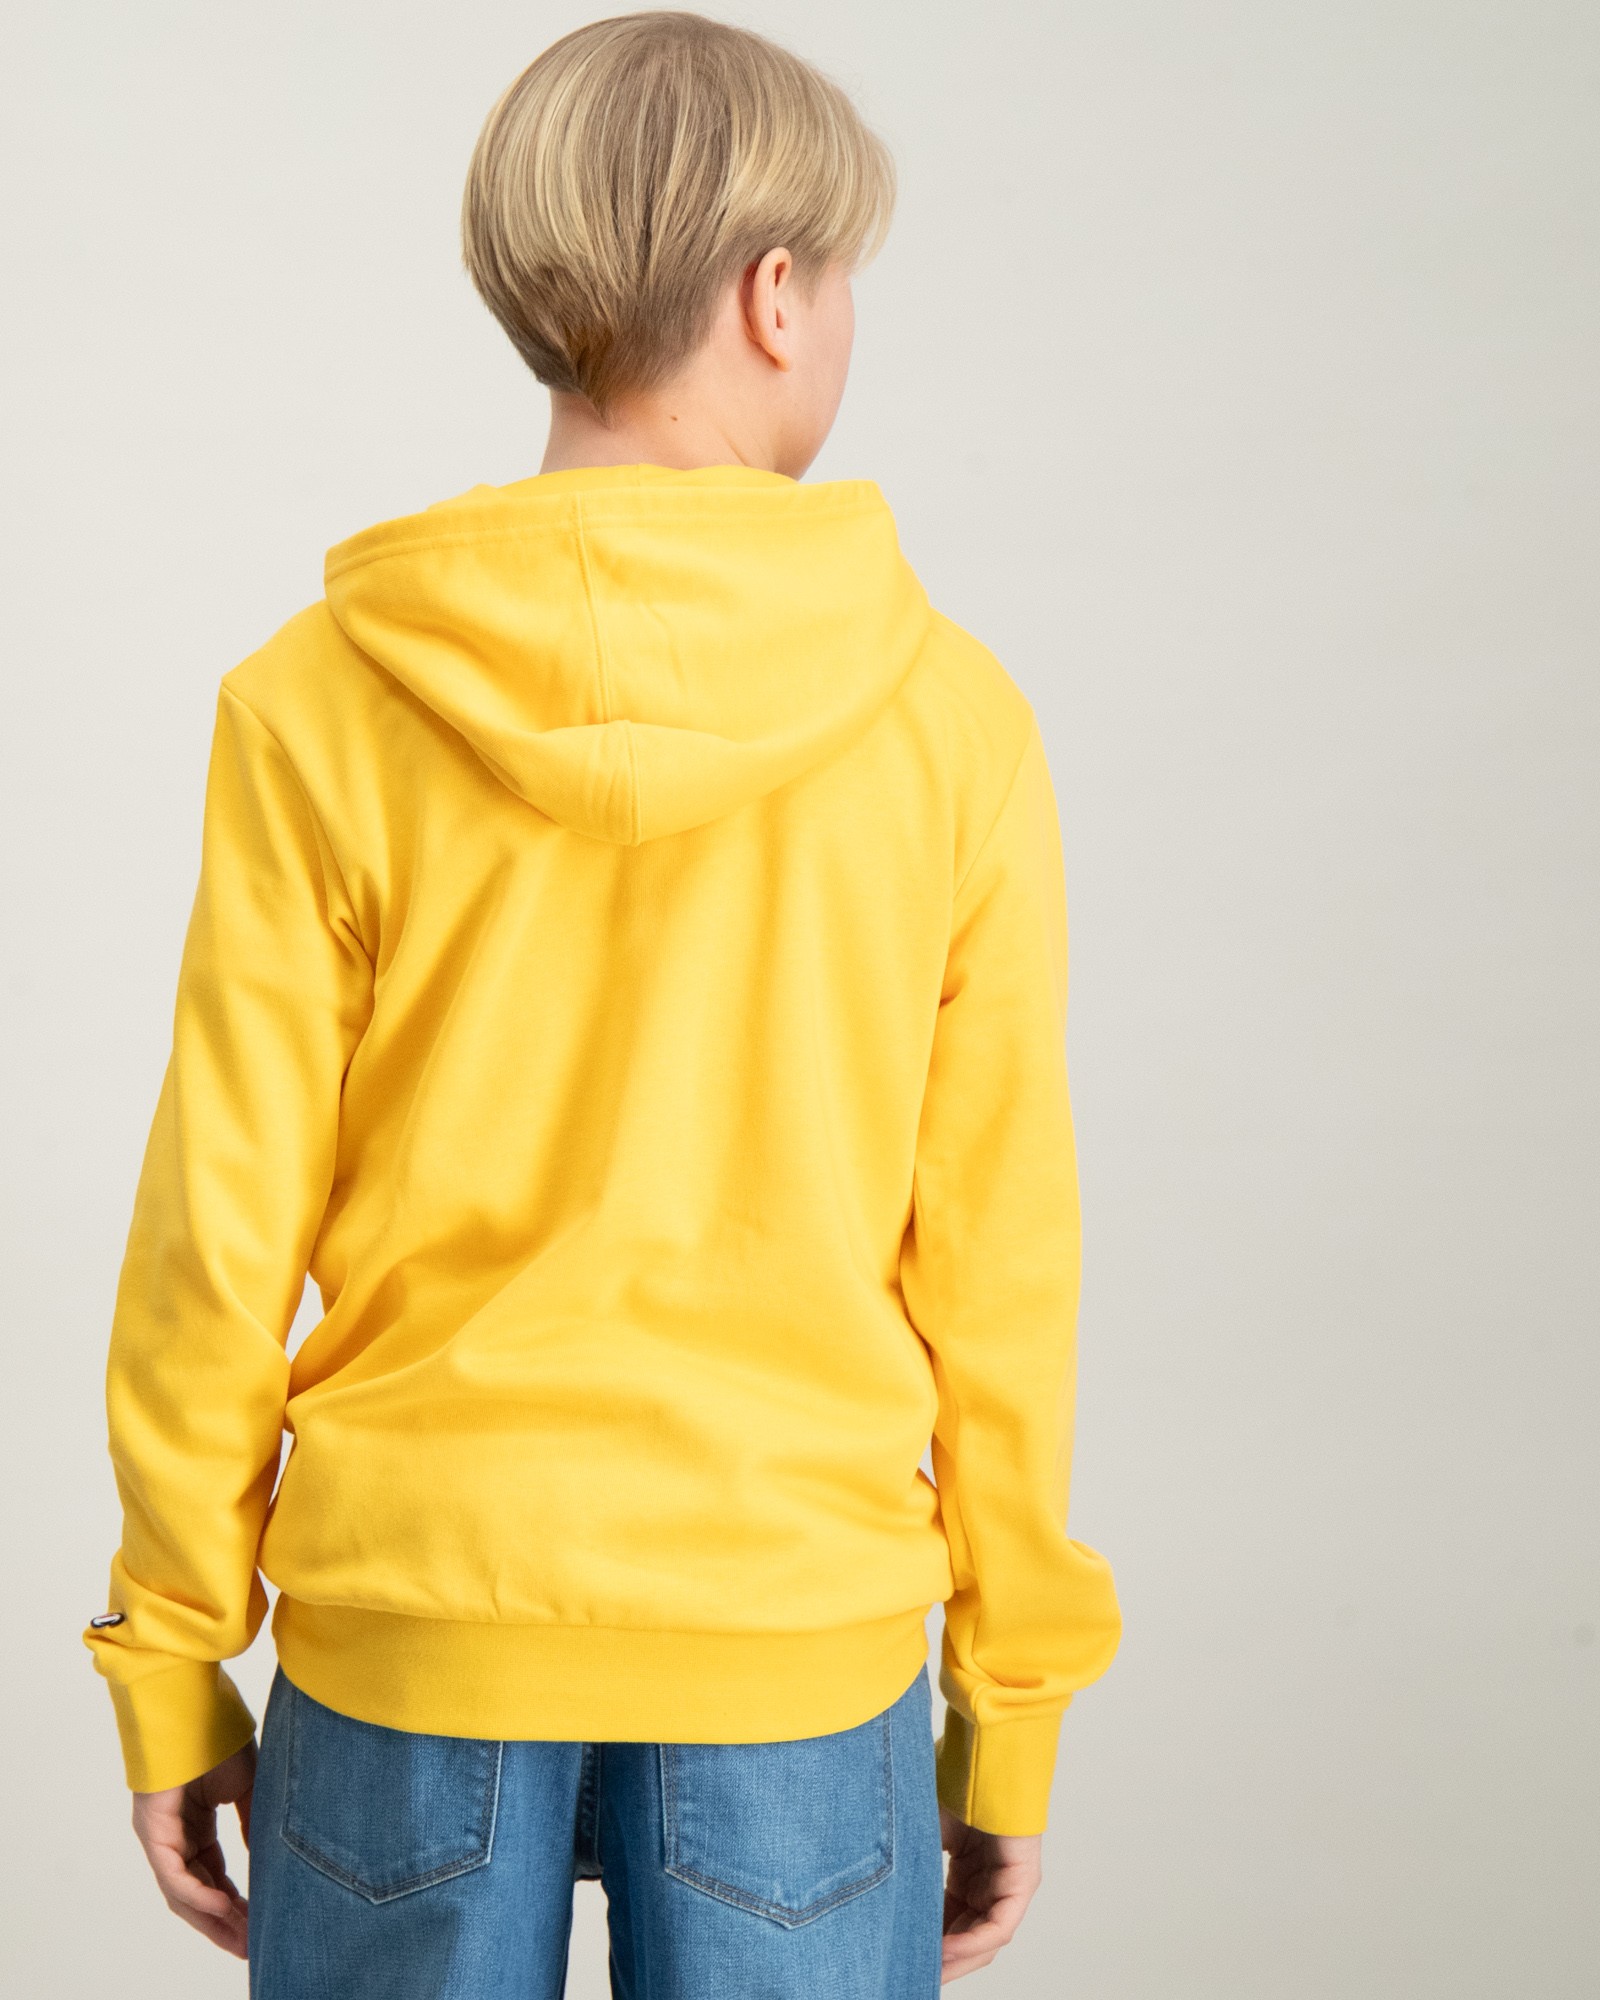 Gelb Hooded Sweatshirt Brand für Kids Jungen Store 